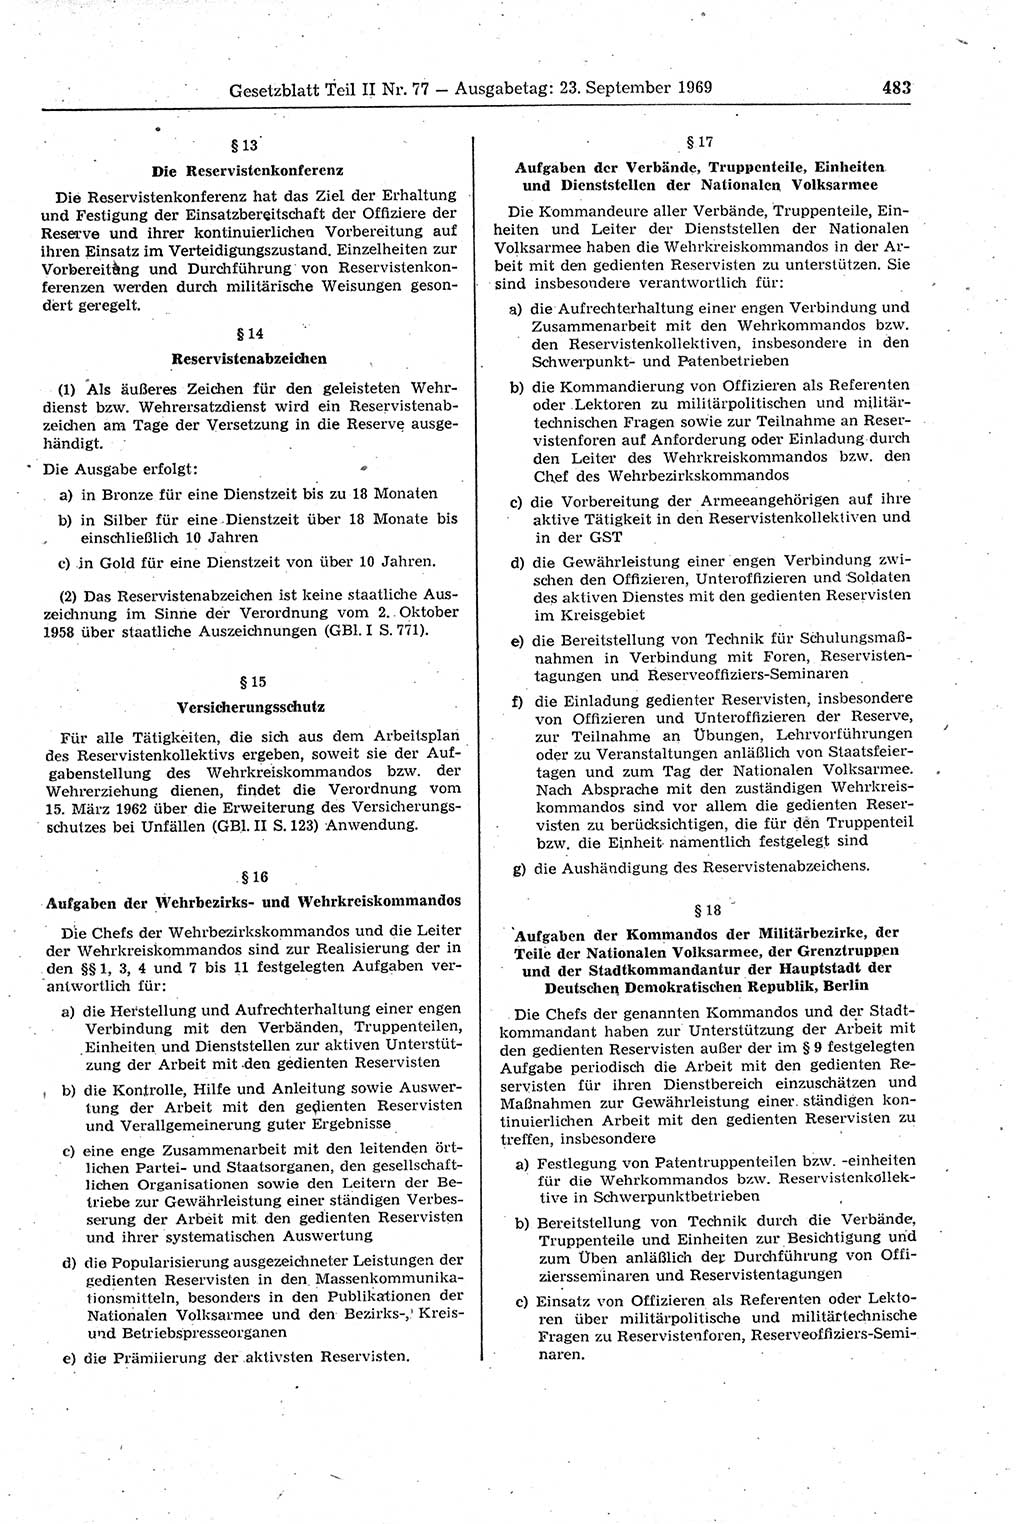 Gesetzblatt (GBl.) der Deutschen Demokratischen Republik (DDR) Teil ⅠⅠ 1969, Seite 483 (GBl. DDR ⅠⅠ 1969, S. 483)